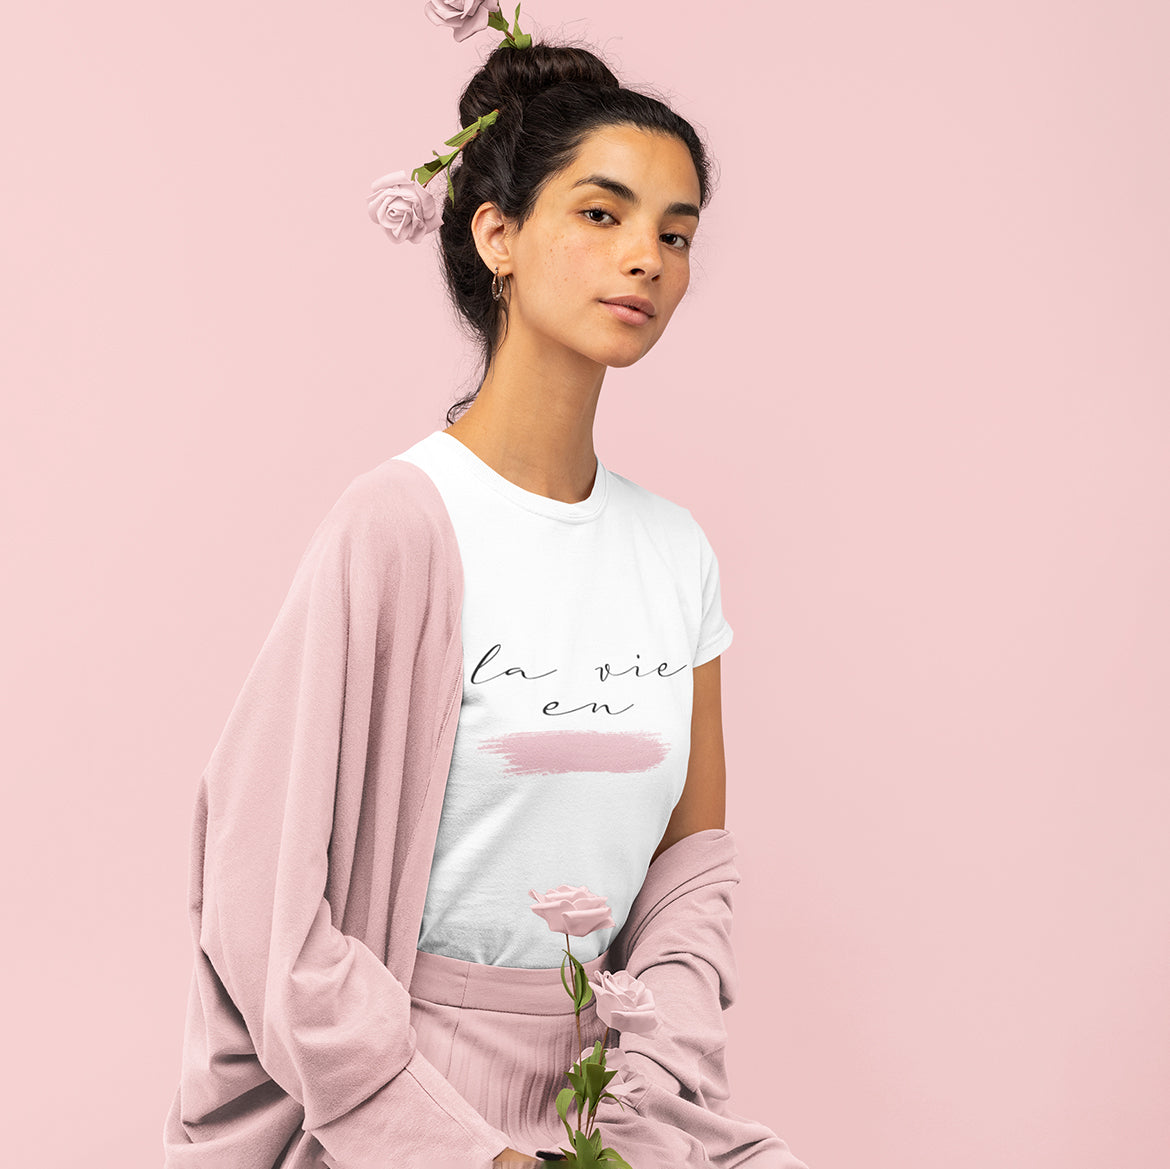 La vie en rose - T-shirt à Manches Courtes pour Femmes